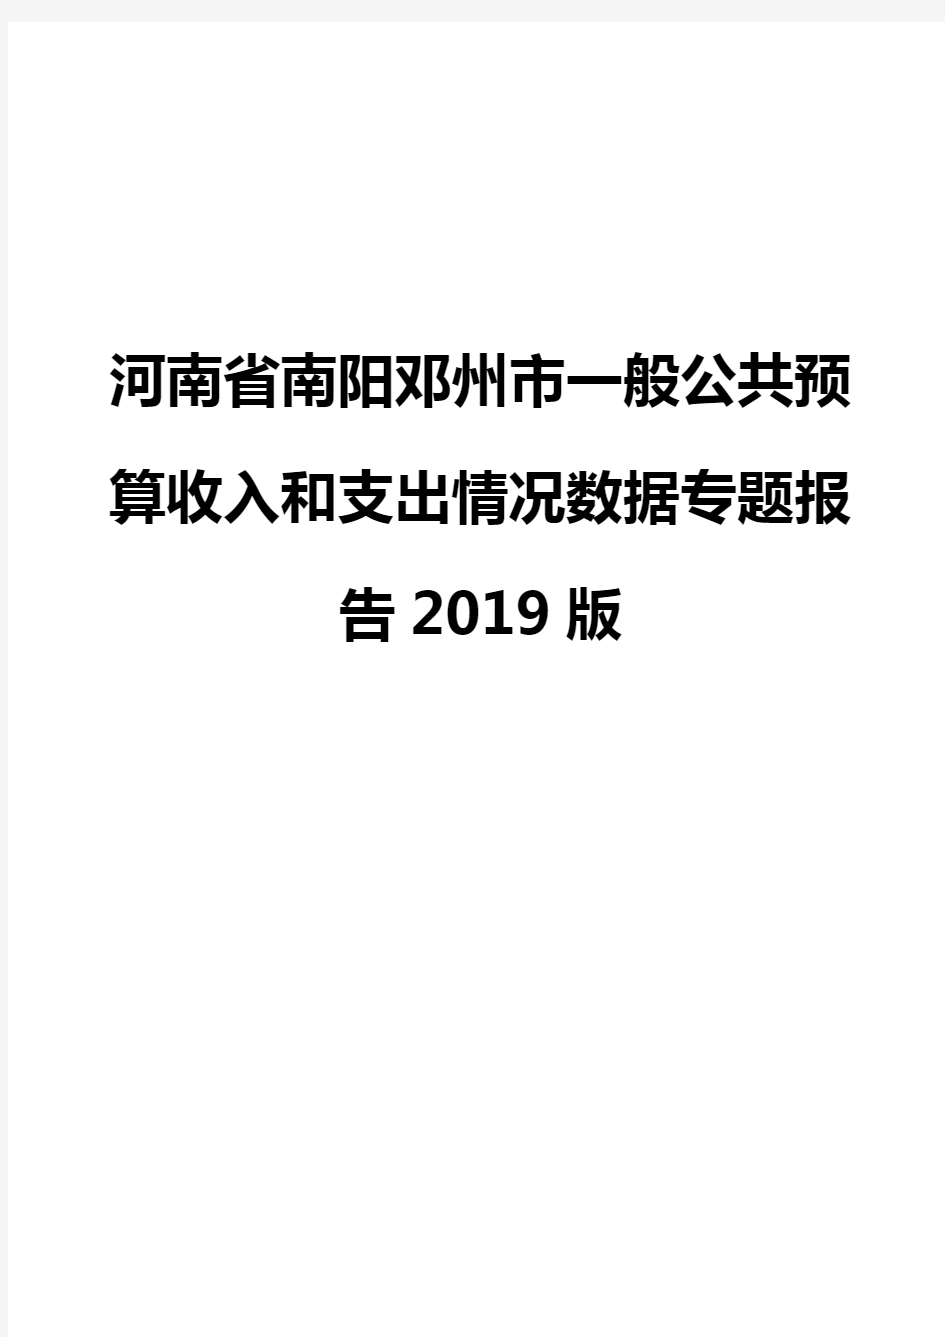 河南省南阳邓州市一般公共预算收入和支出情况数据专题报告2019版